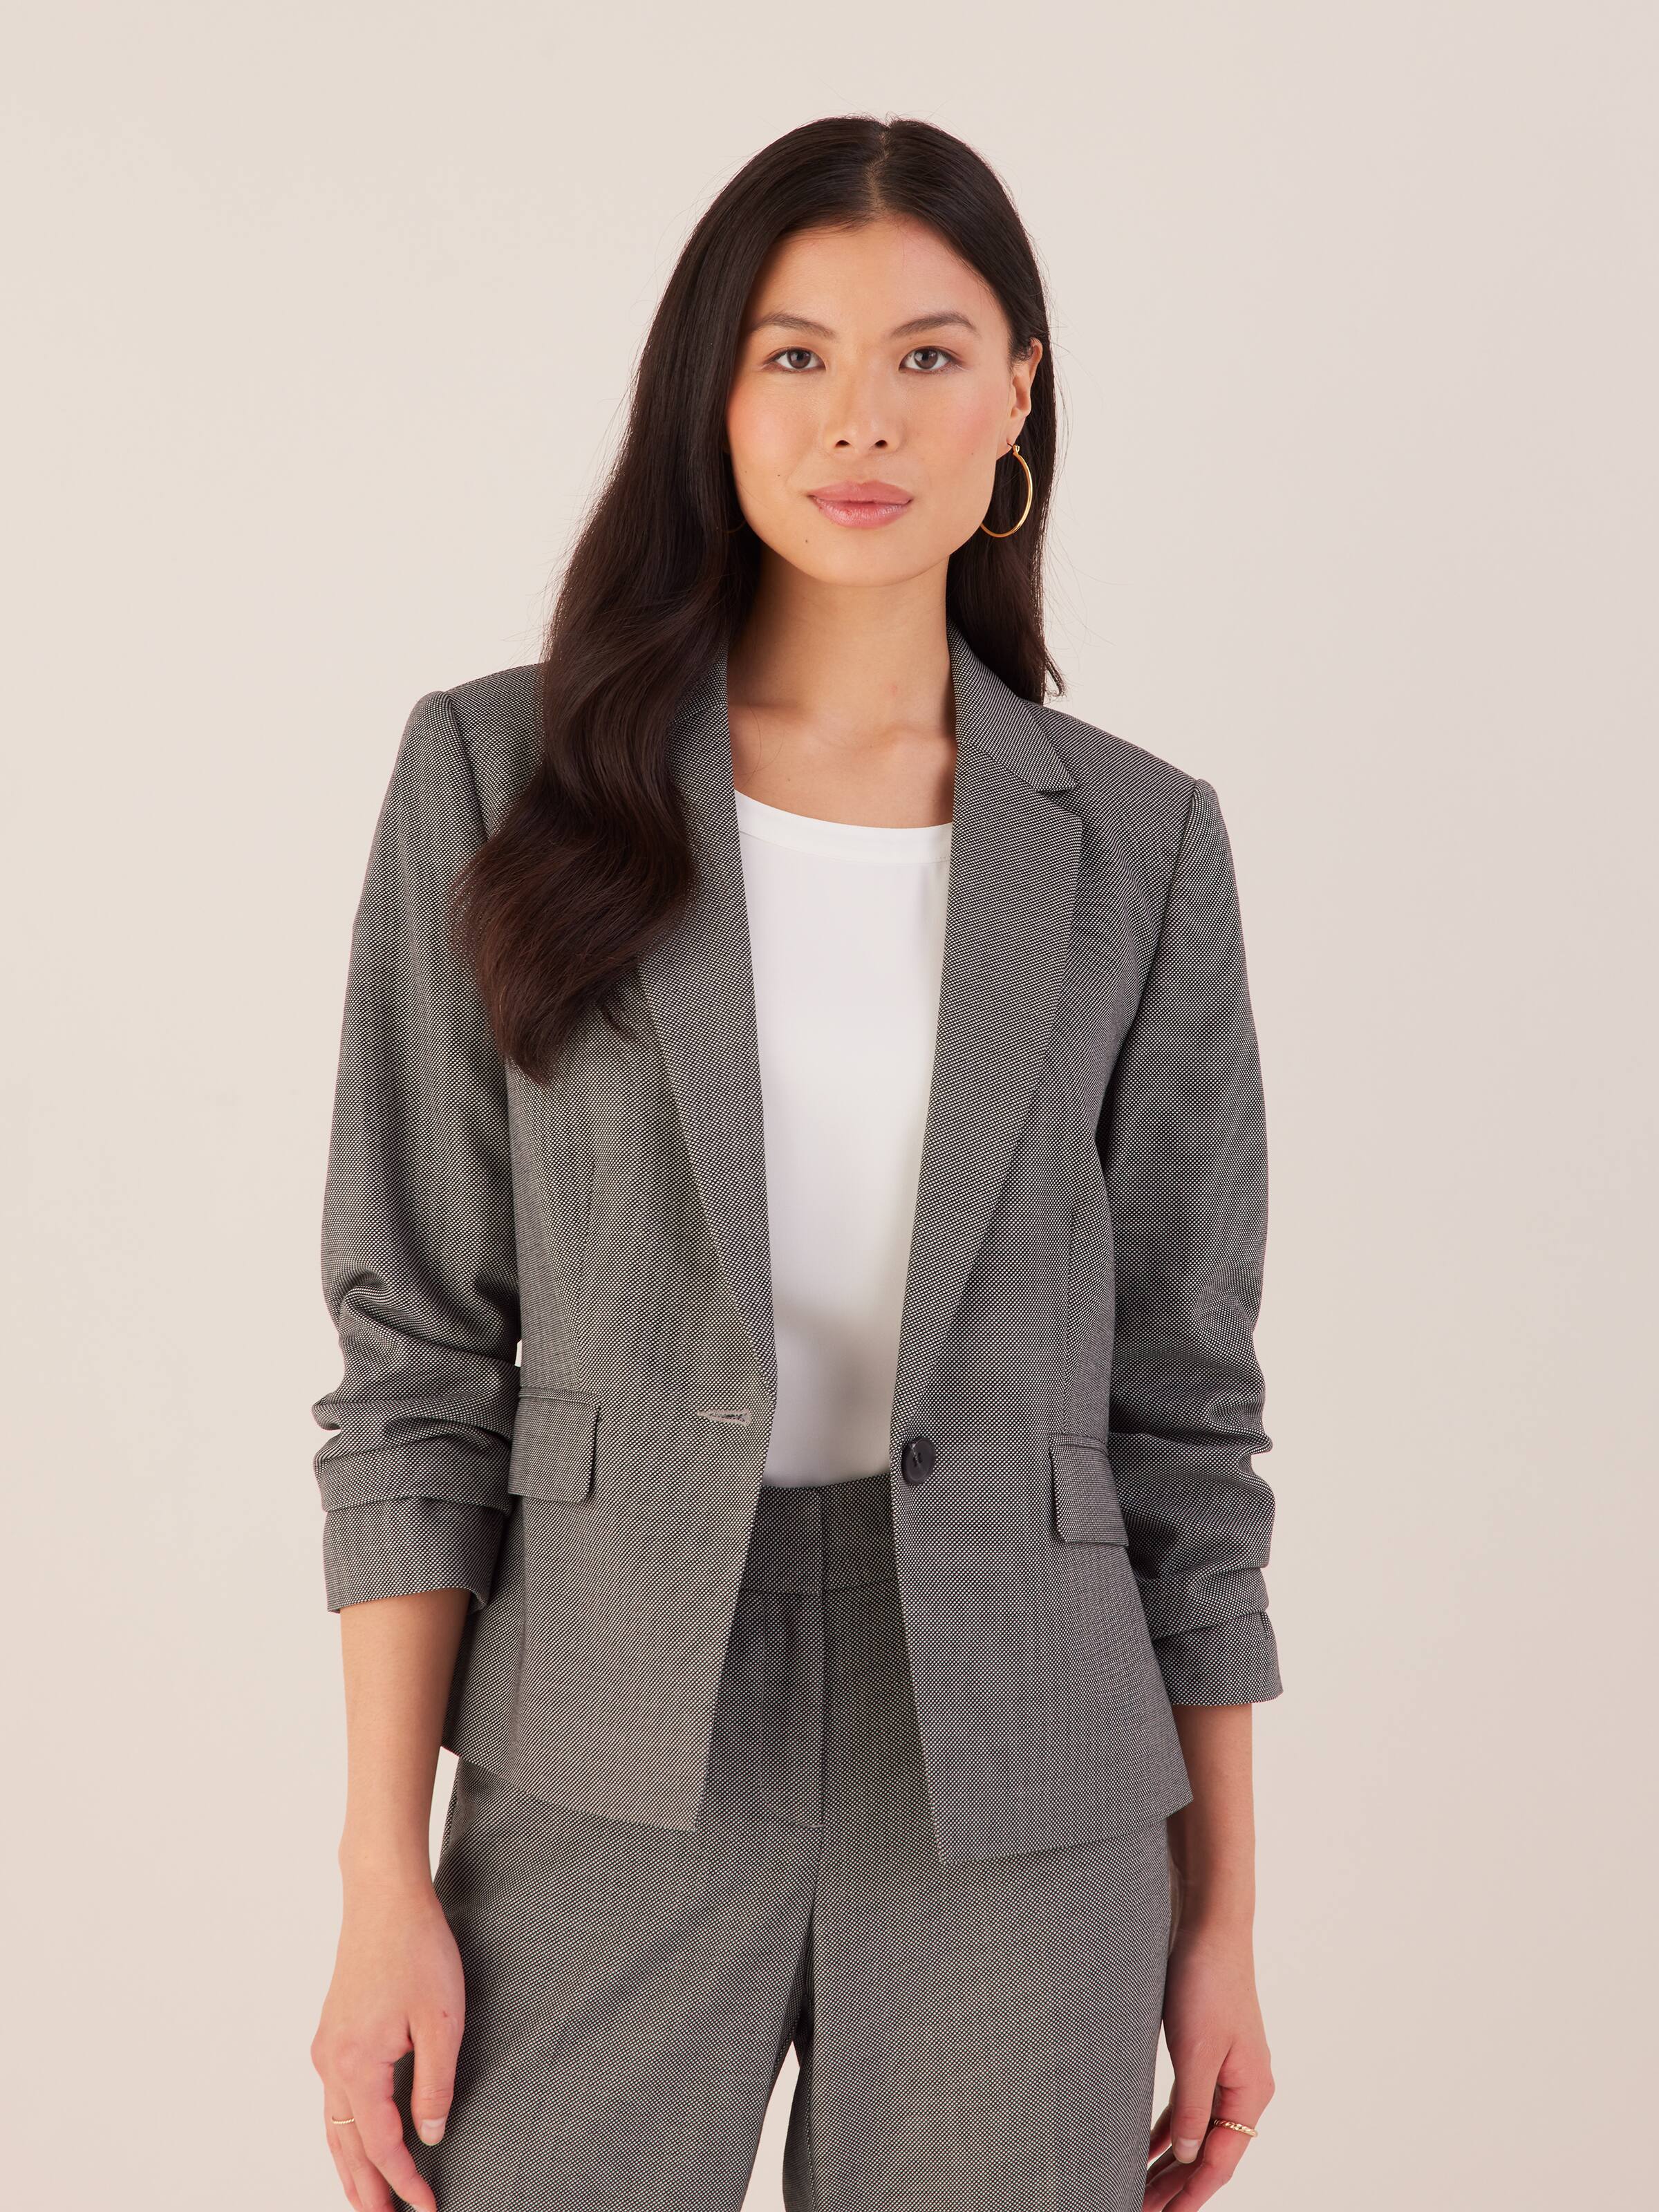 Lavender Formal Pantsuit for Women, Business Women Suit With Vest, Formal  3-piece Suit Set Womens, Womens Office Wear Blazer Trouser Suit -   Denmark